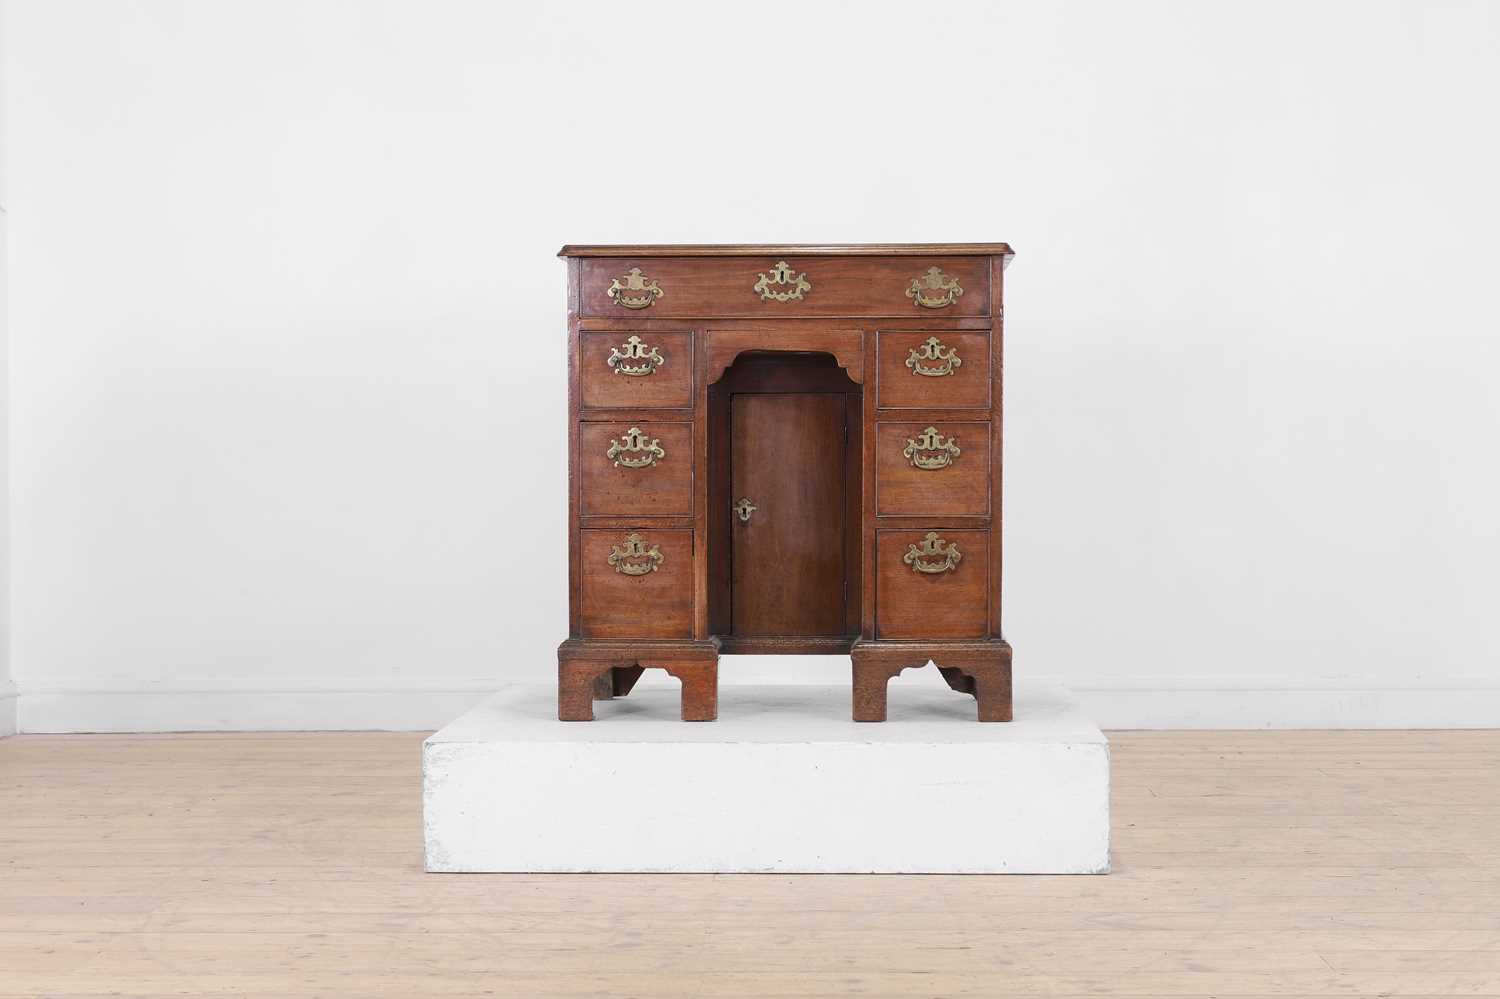 Lot 371 - A George III mahogany kneehole desk